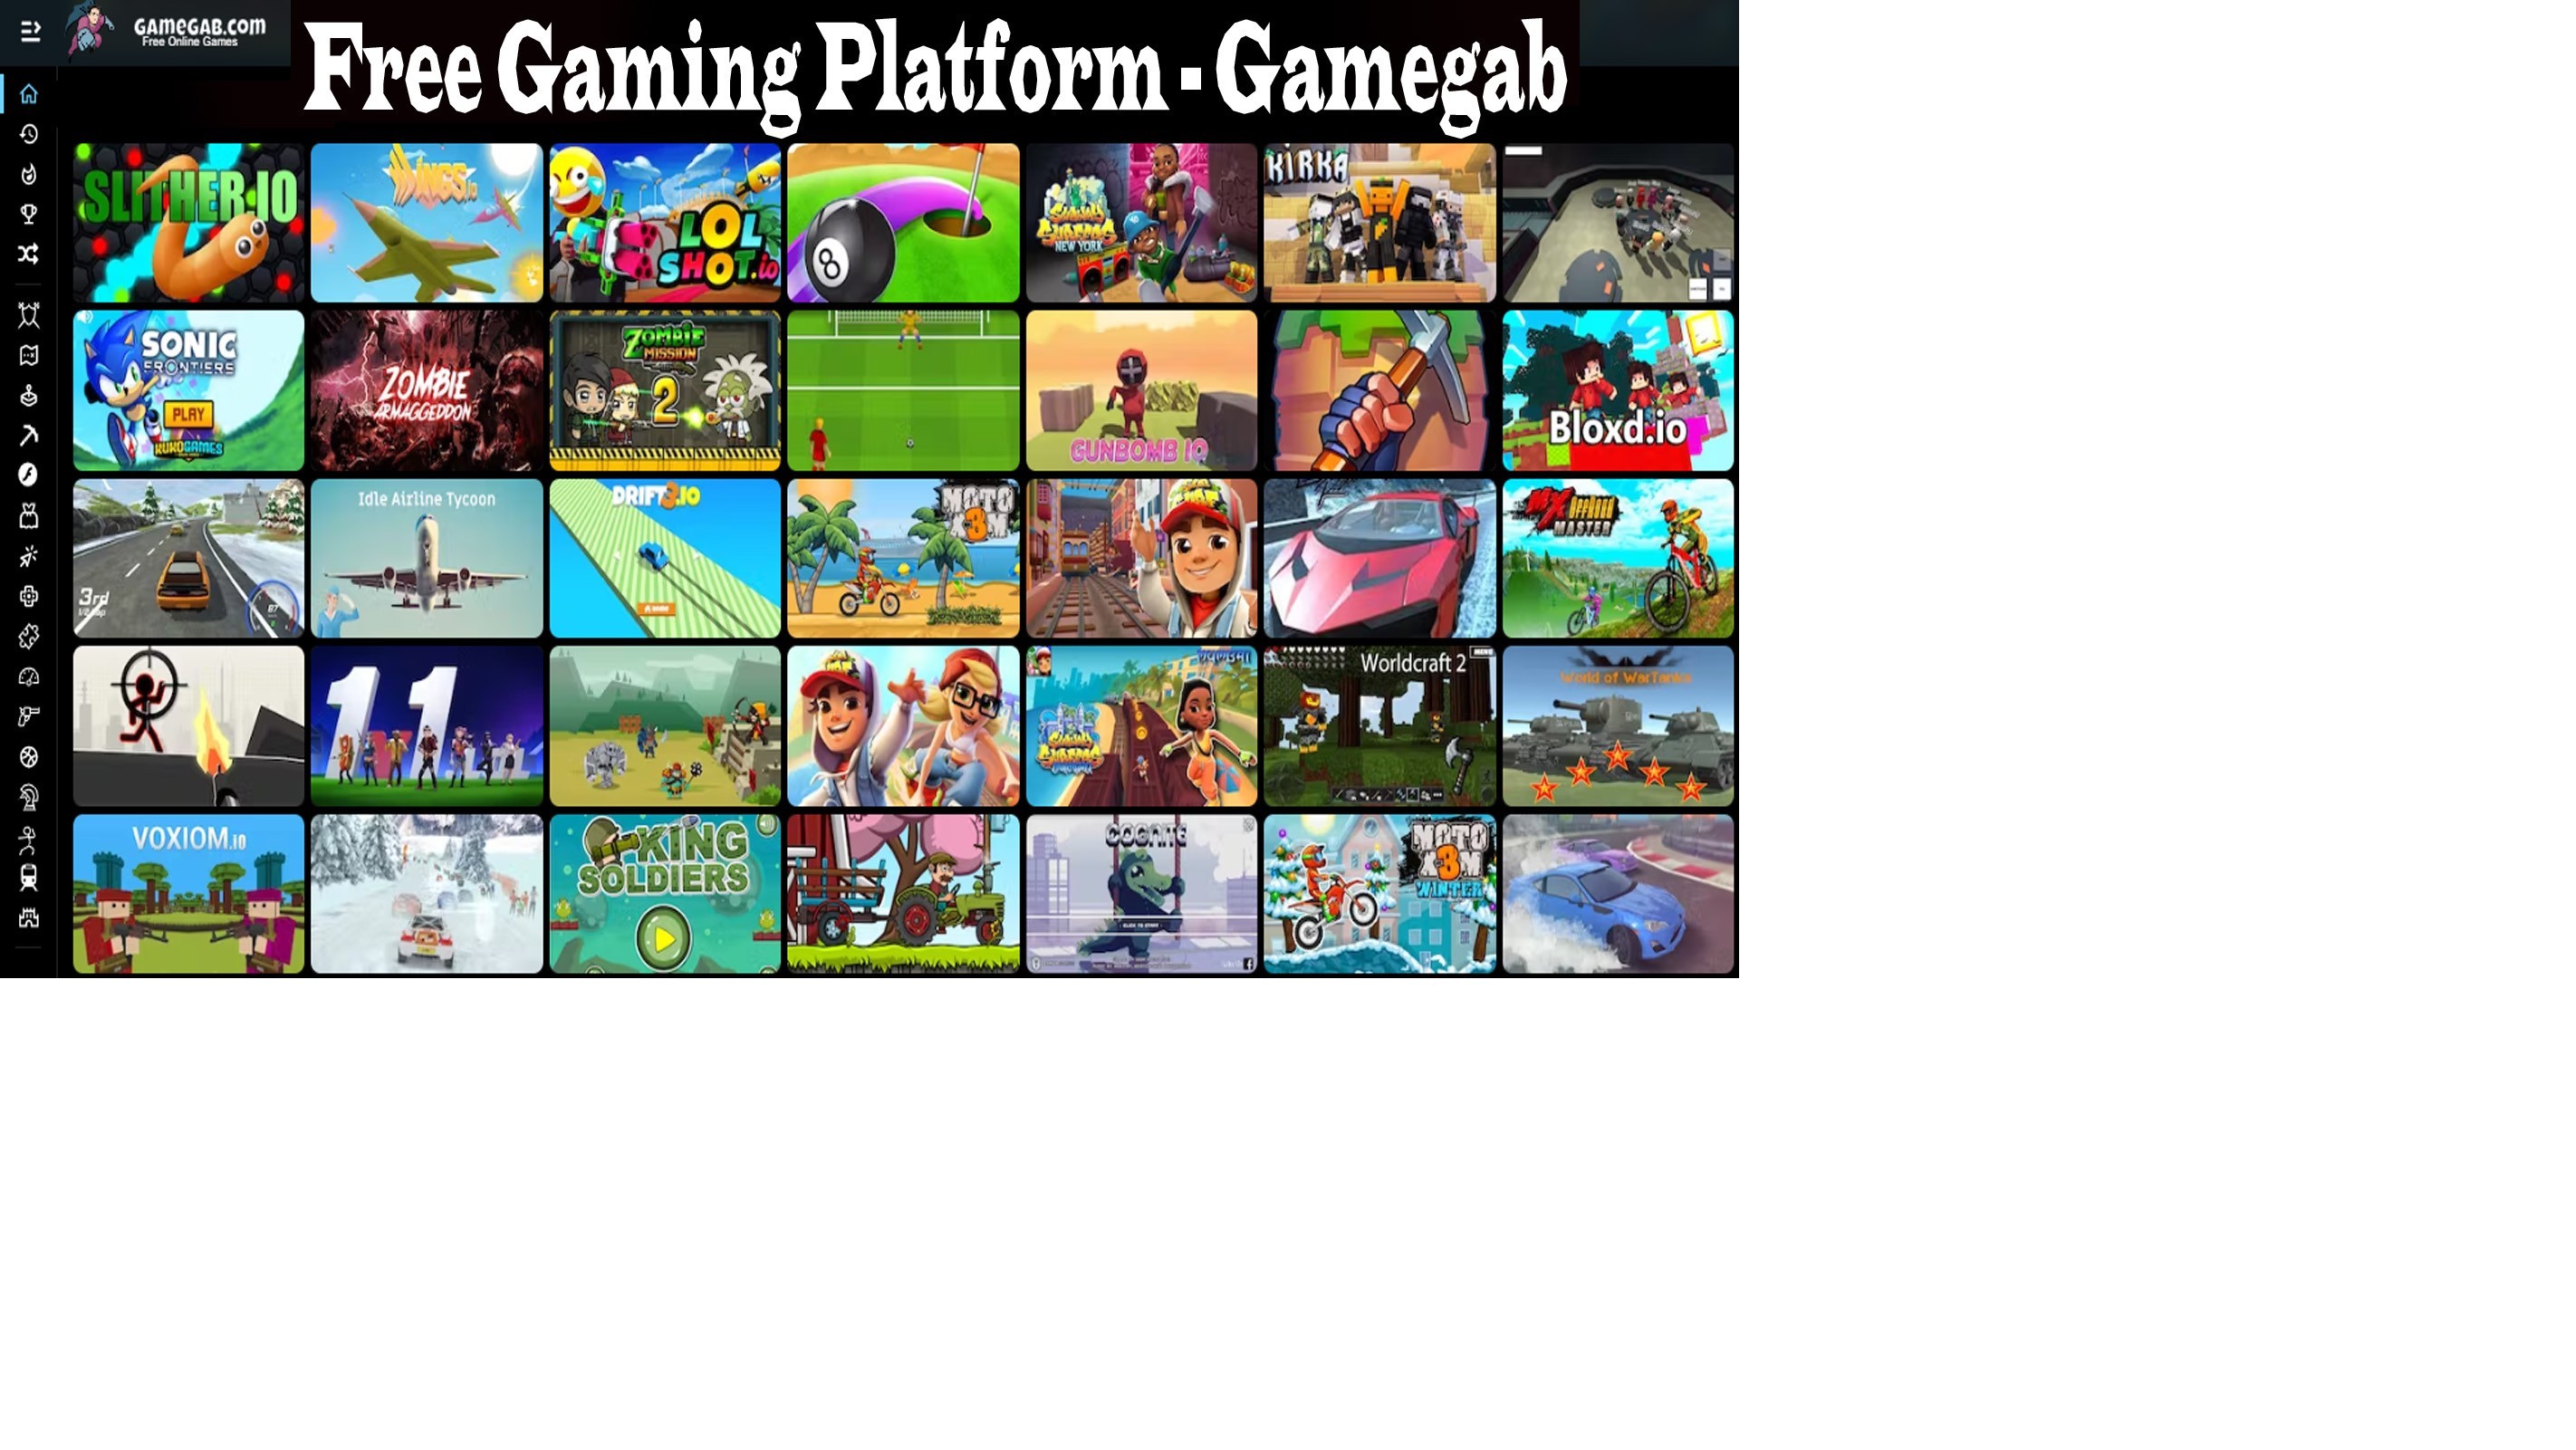 Free Gaming Platform - Gamegab